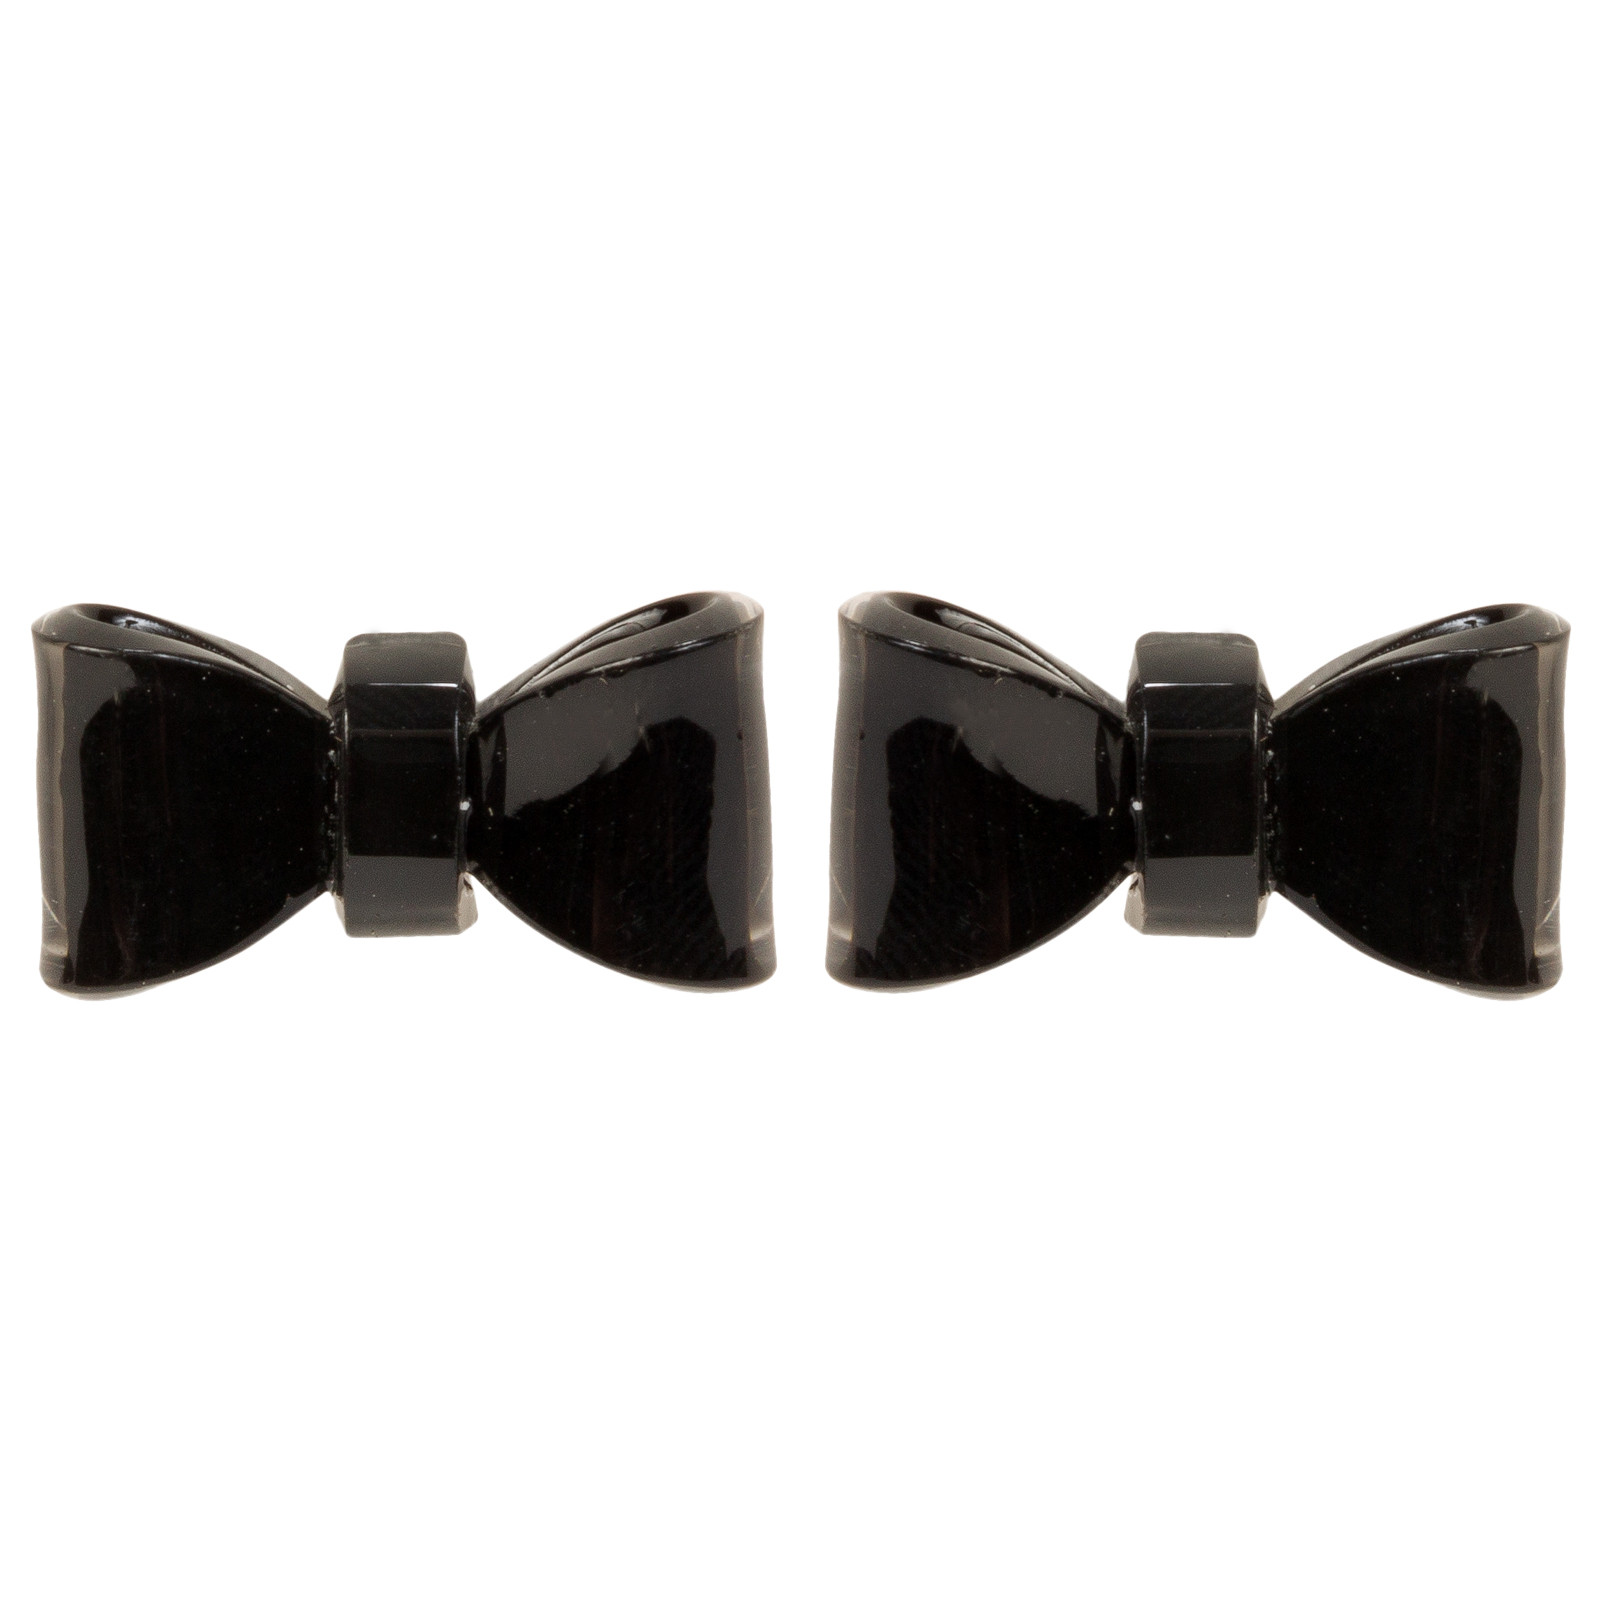 Bow Tie Earrings
 Women s Black Bow Tie Stud Earrings Cute Fashion Evening